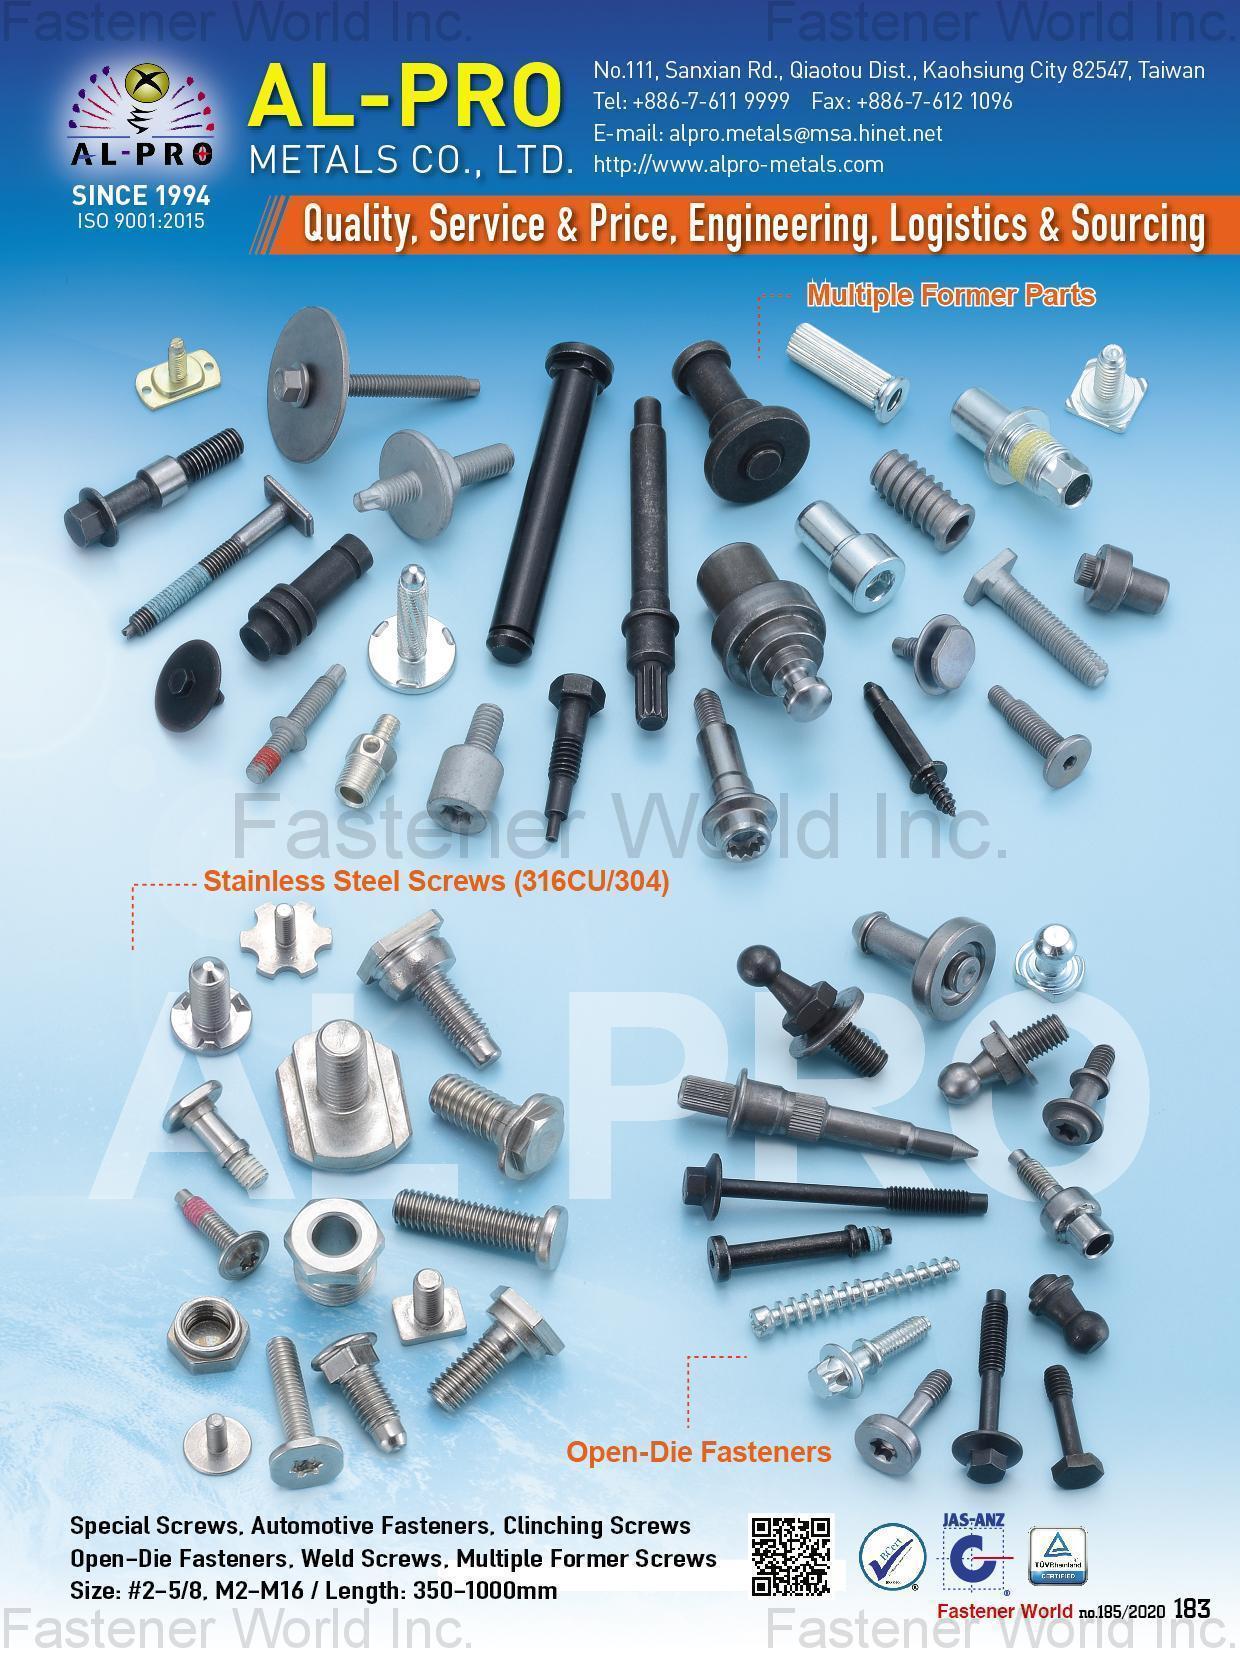 AL-PRO METALS CO., LTD. , Multiple Former Parts, Stainless Steel Screws (316CU/304), Open-Die Fasteners